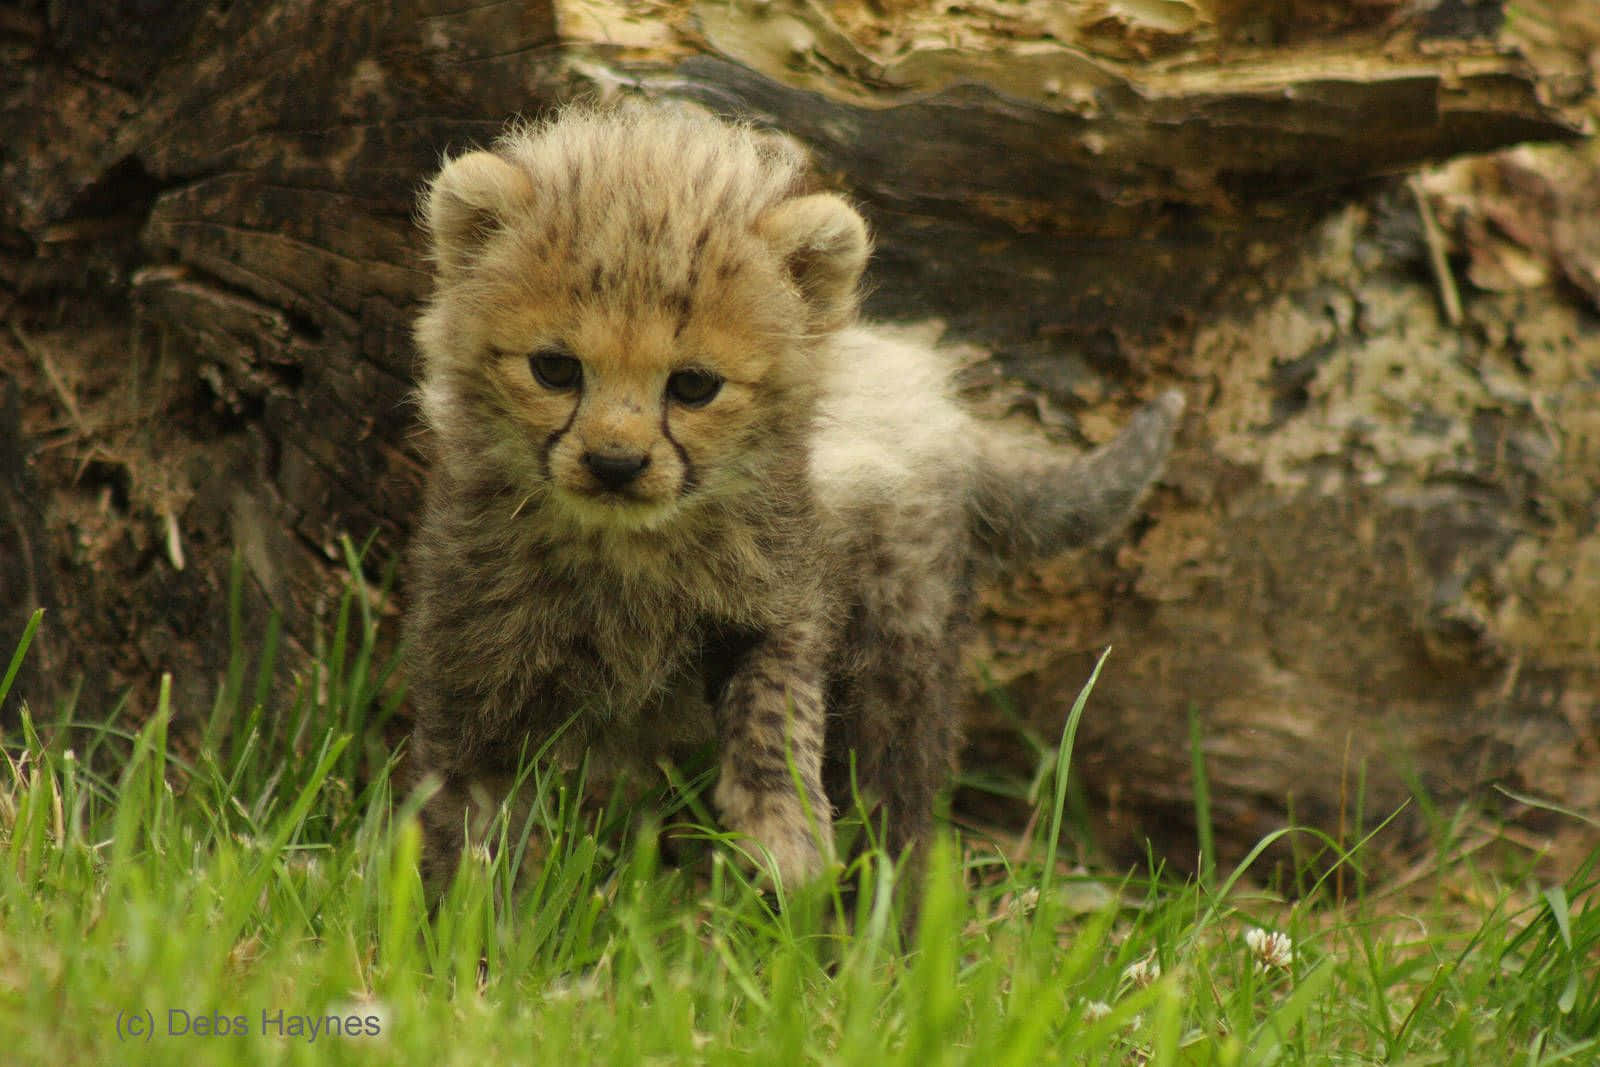 Little Baby Cheetah On The Grass Wallpaper